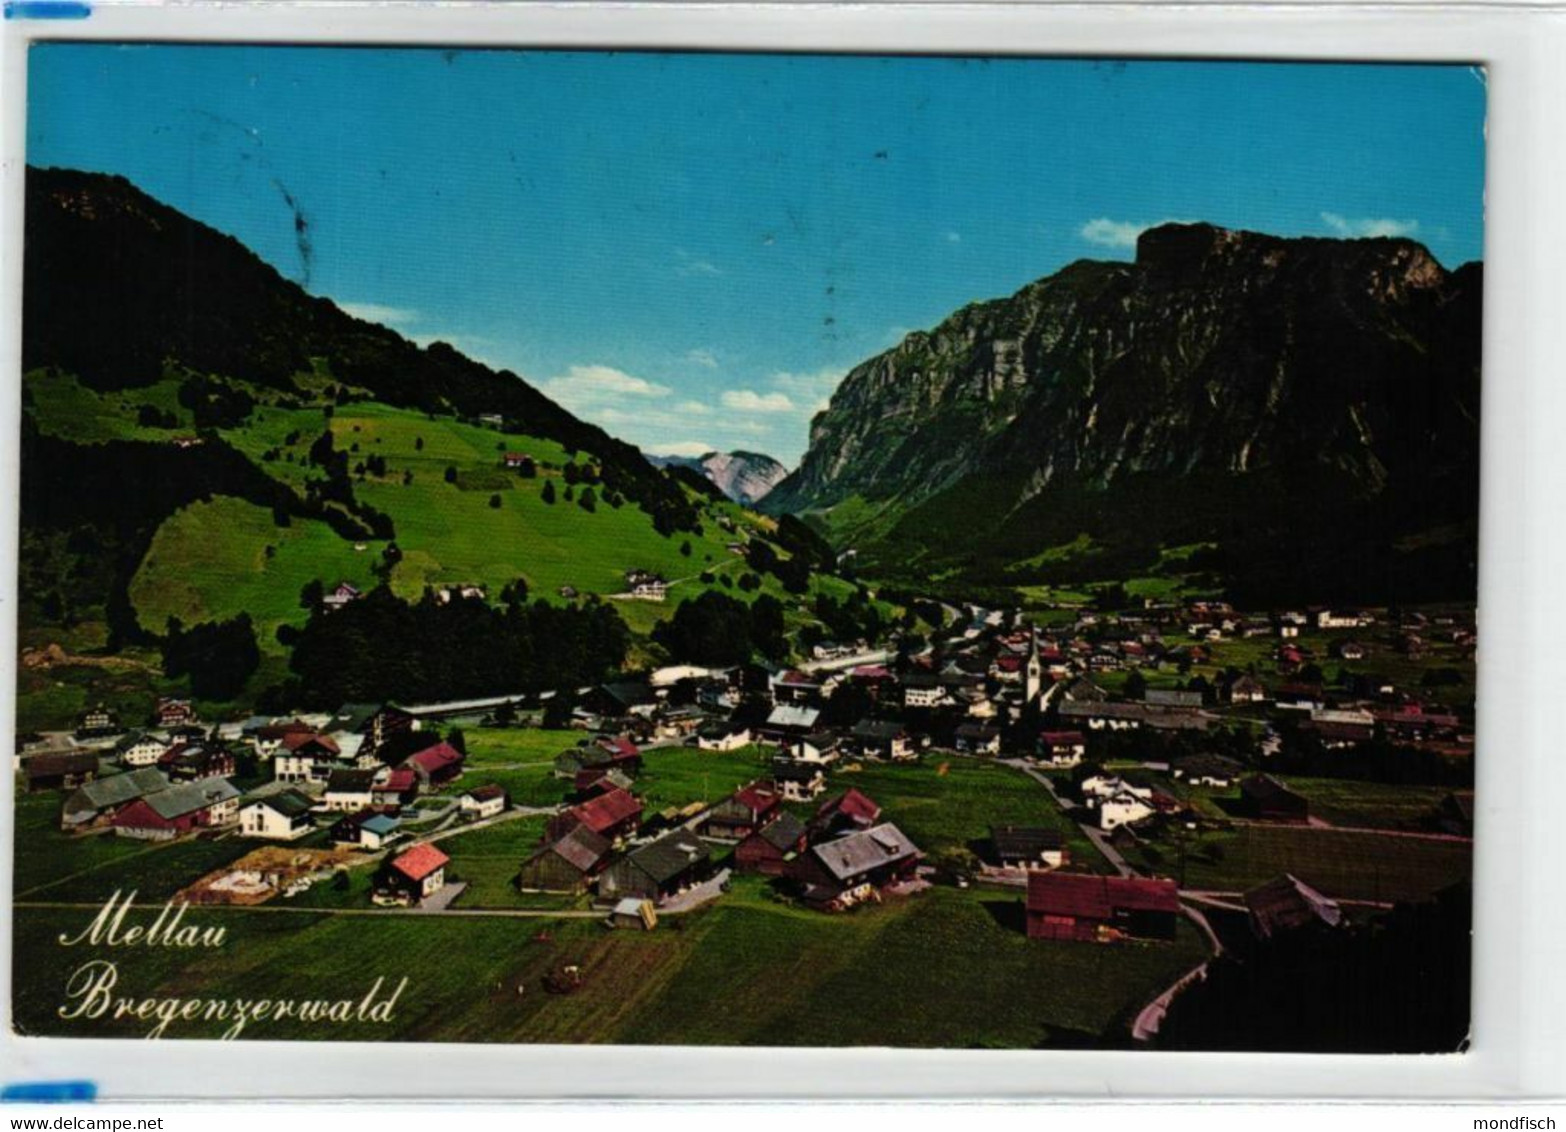 Mellau - Bregenzerwald - Luftbild 198? - Bregenzerwaldorte